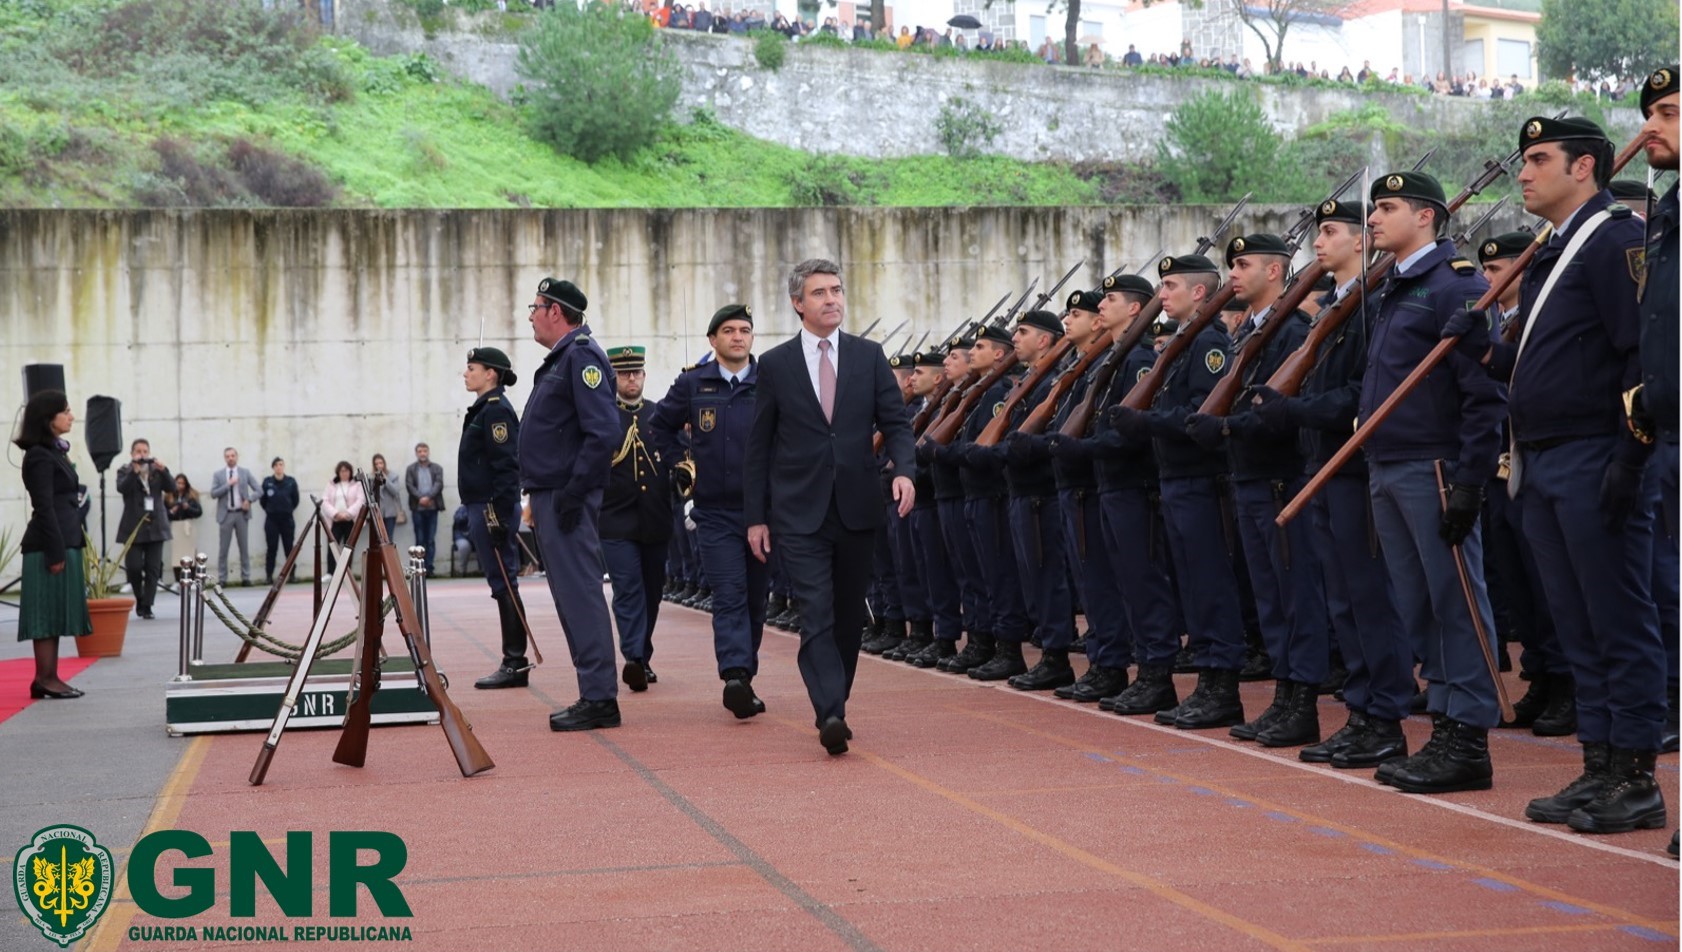 GNR: Cerimónia do Compromisso de Honra do 48.º Curso de Formação de Guardas